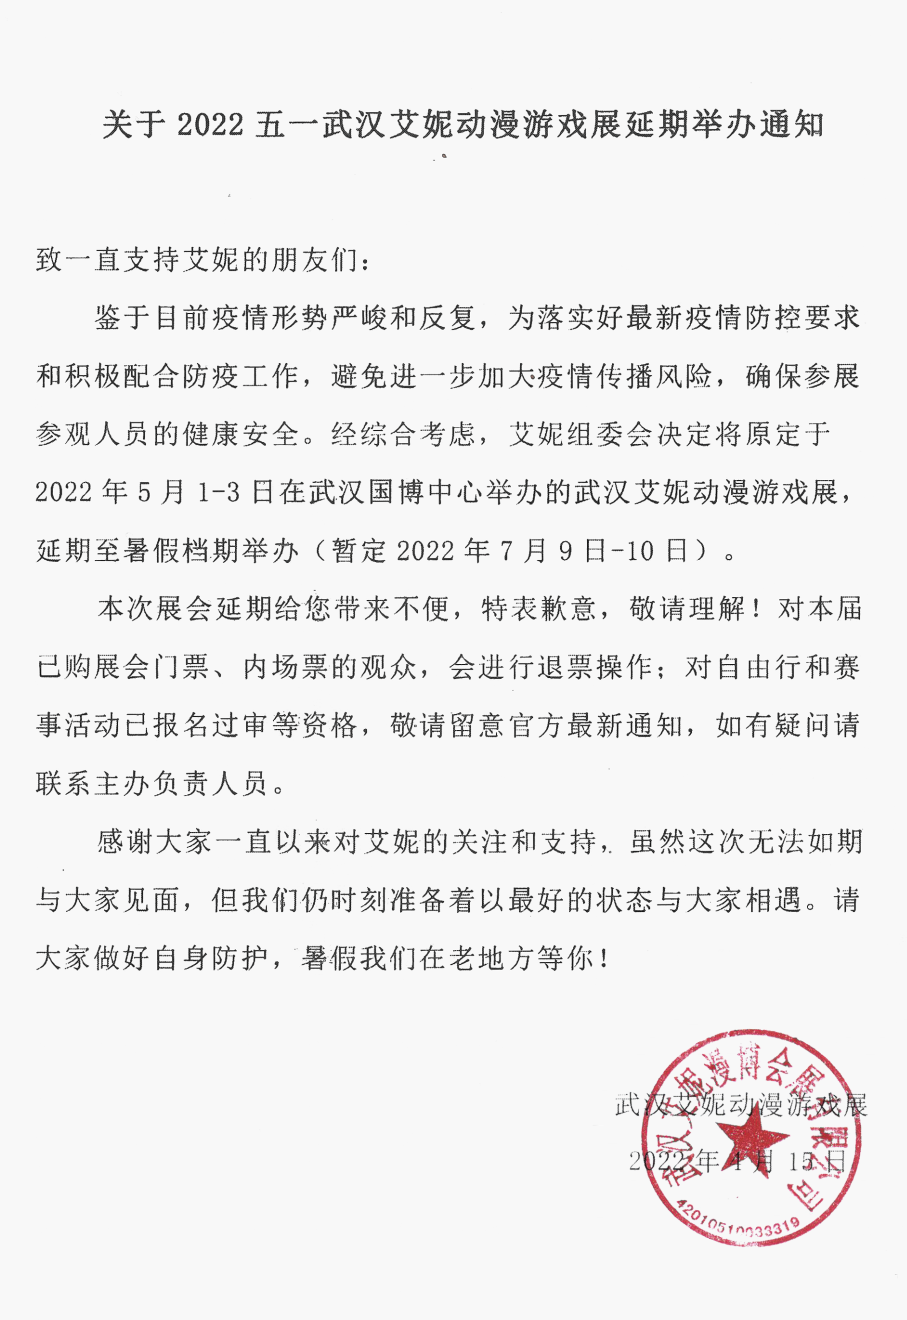 关于五一“武汉艾妮动漫游戏展”延期举办通知